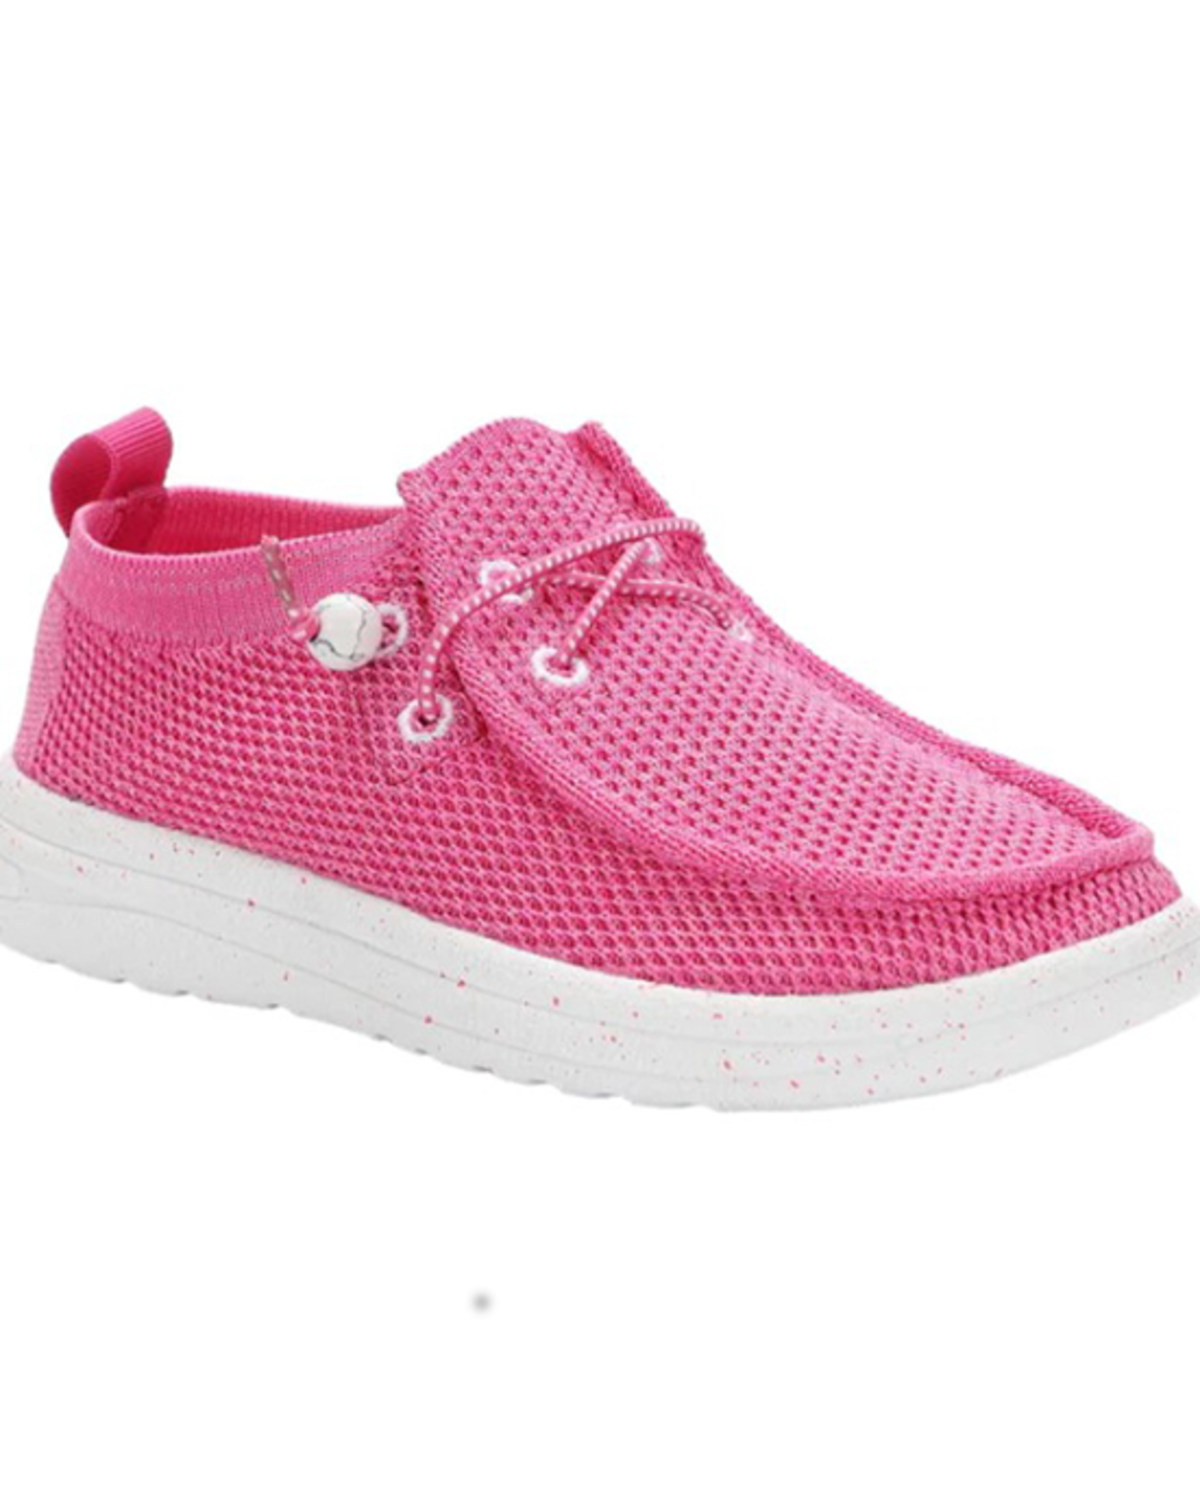 Lamo Footwear Girls' Mickey Slip-On Casual Shoes - Moc Toe